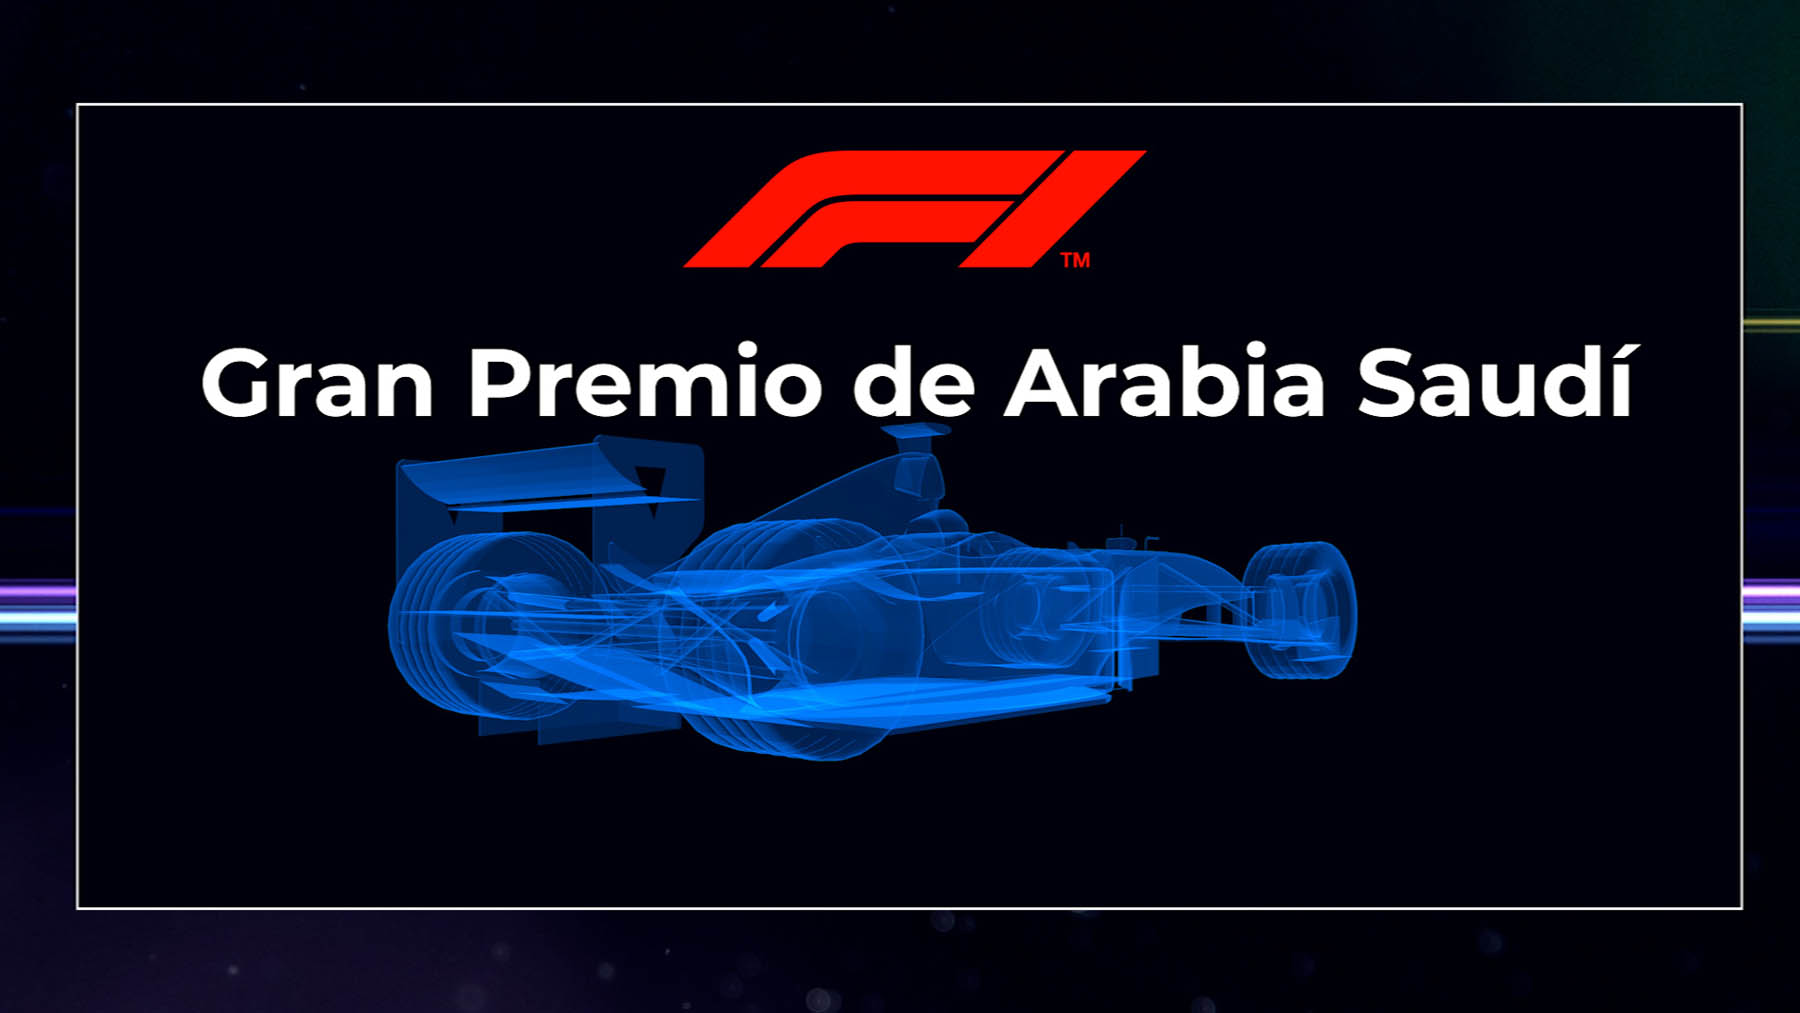 F1 GP de Arabia Saudí 2021: hora, canal TV y cómo ver en directo online la carrera de F1 hoy.